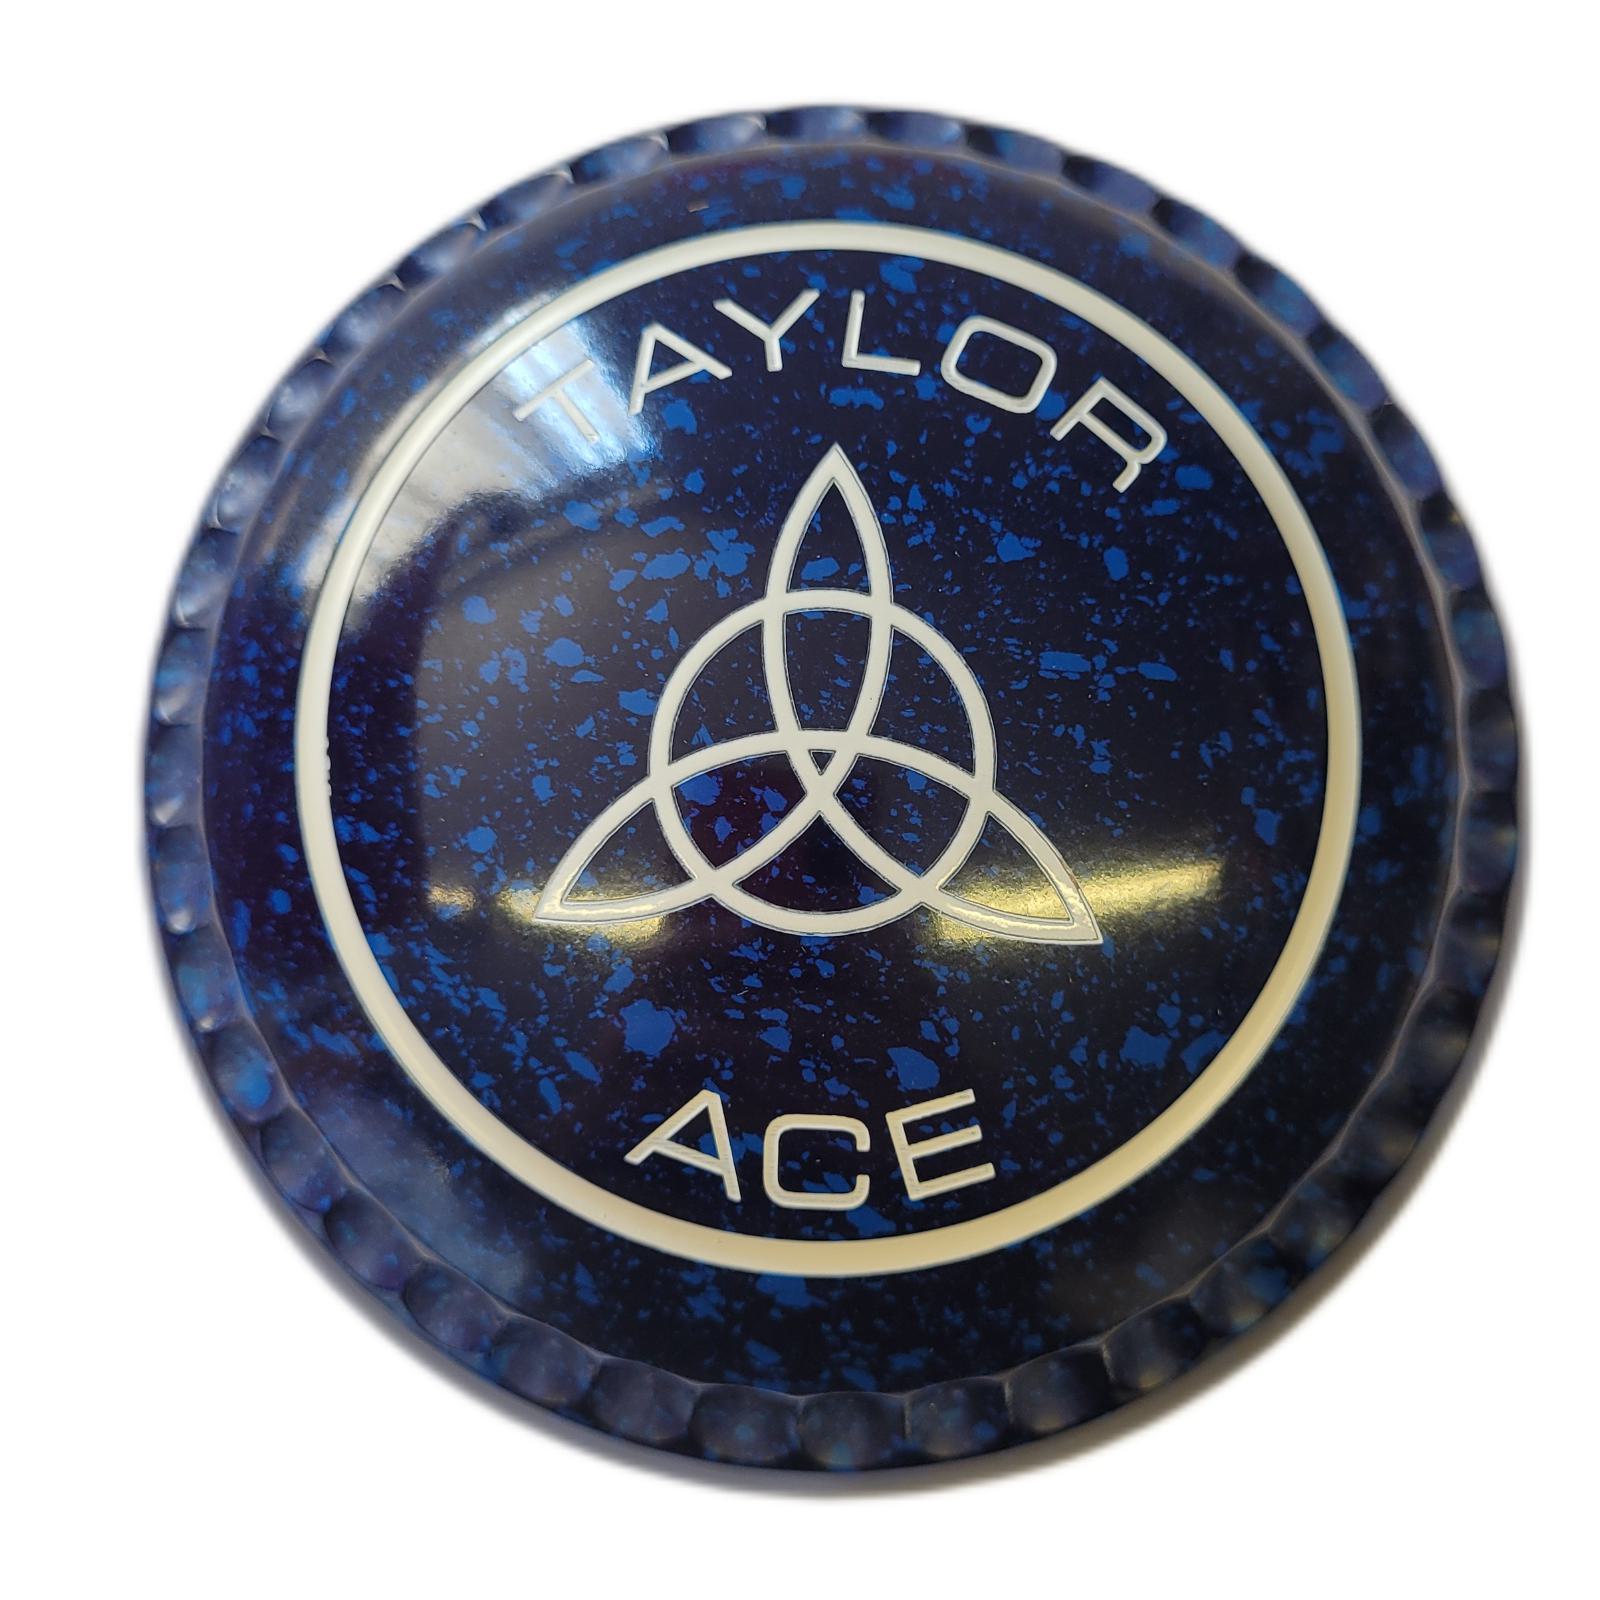 Taylor Ace size 3H Blue/Blue Xtreme grip